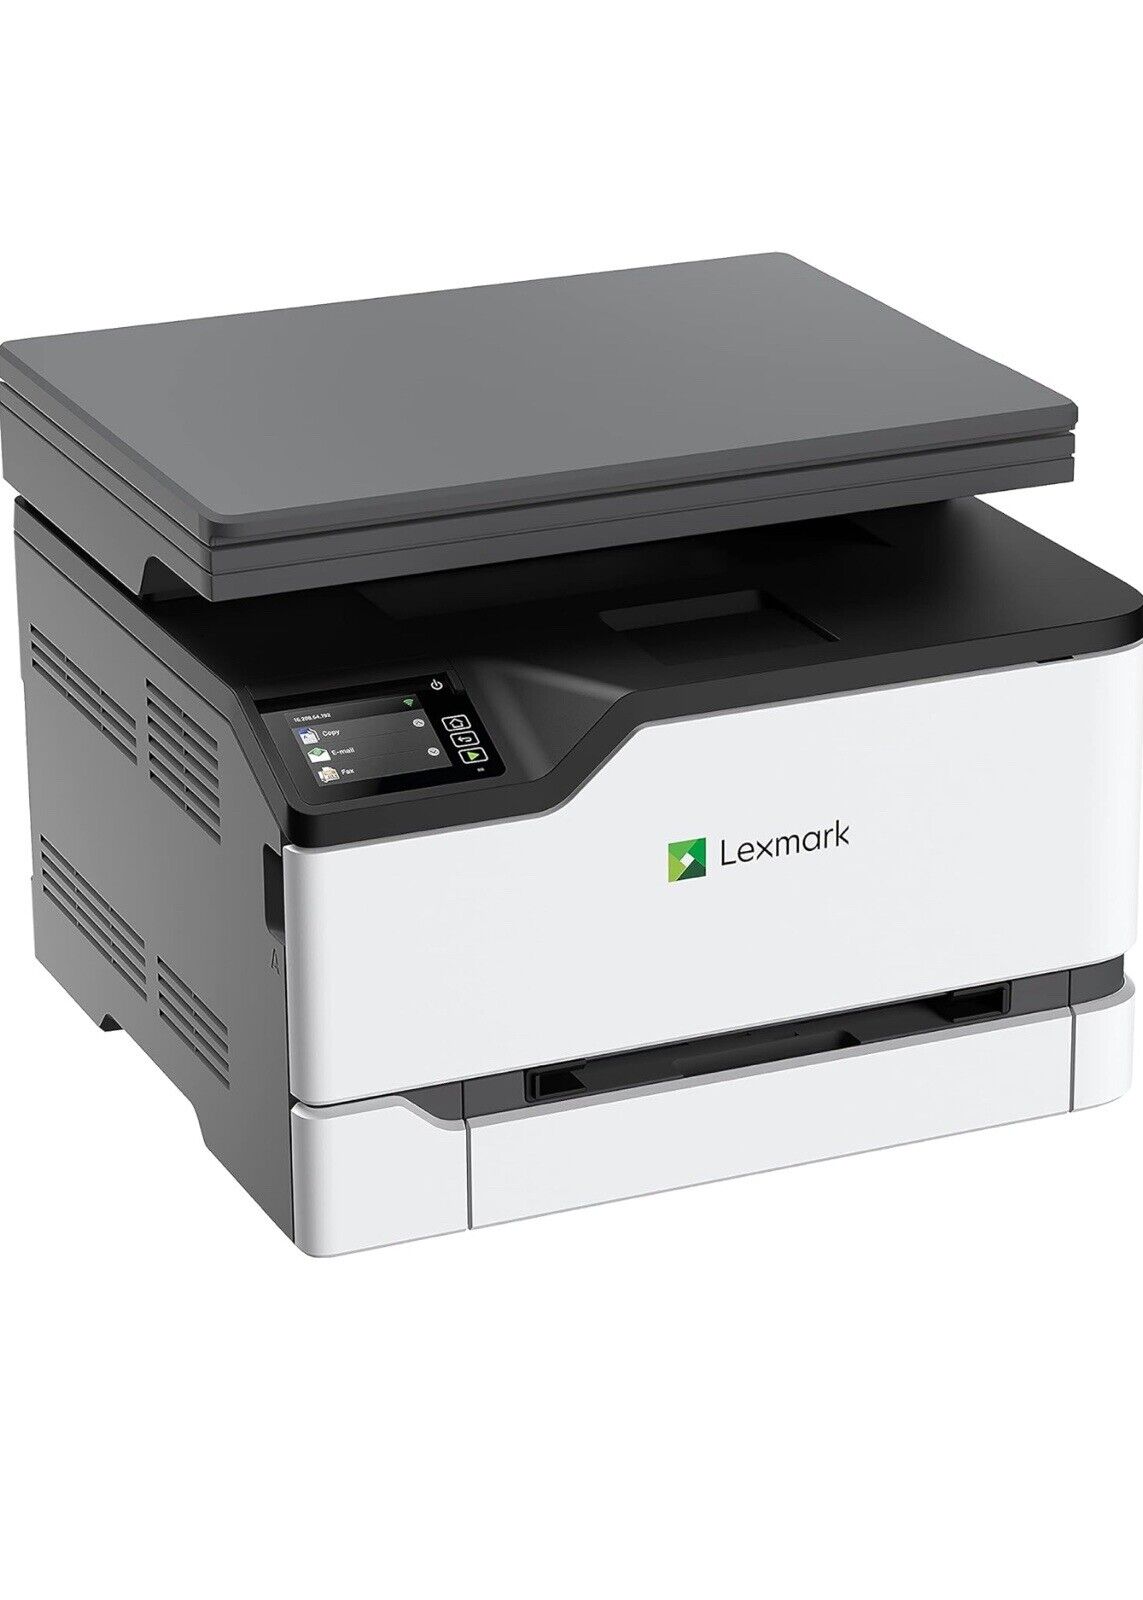 NEW Lexmark MC3224dwe Multifunction Laser Printer/Copier/Scanner/Fax